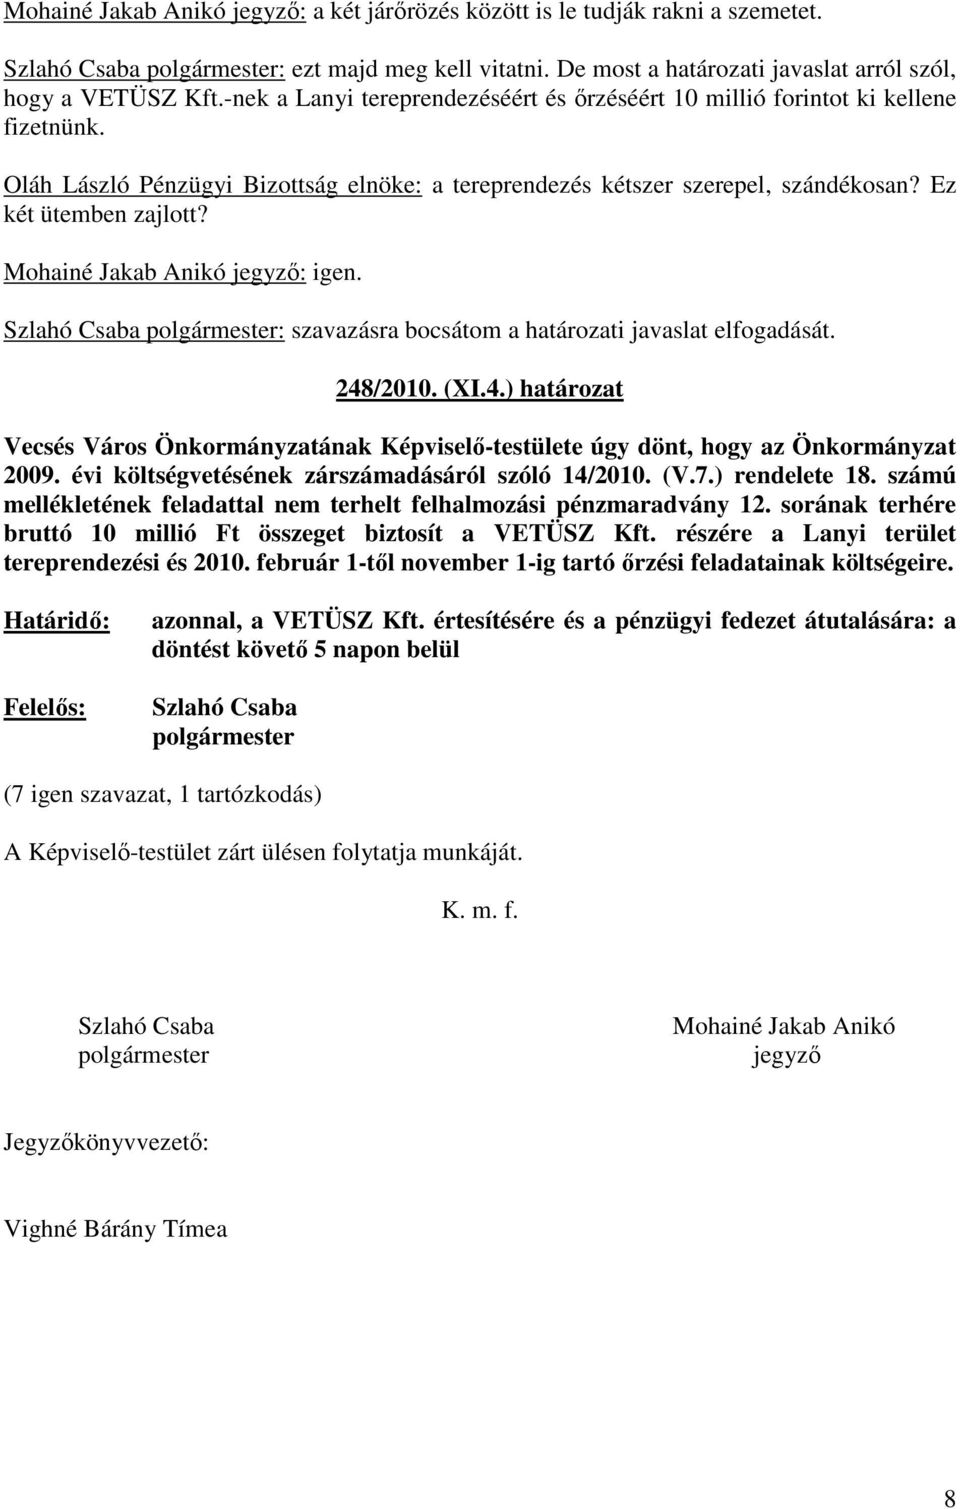 Mohainé Jakab Anikó jegyzı: igen. : szavazásra bocsátom a határozati javaslat elfogadását. 248/2010. (XI.4.) határozat Vecsés Város Önkormányzatának Képviselı-testülete úgy dönt, hogy az Önkormányzat 2009.